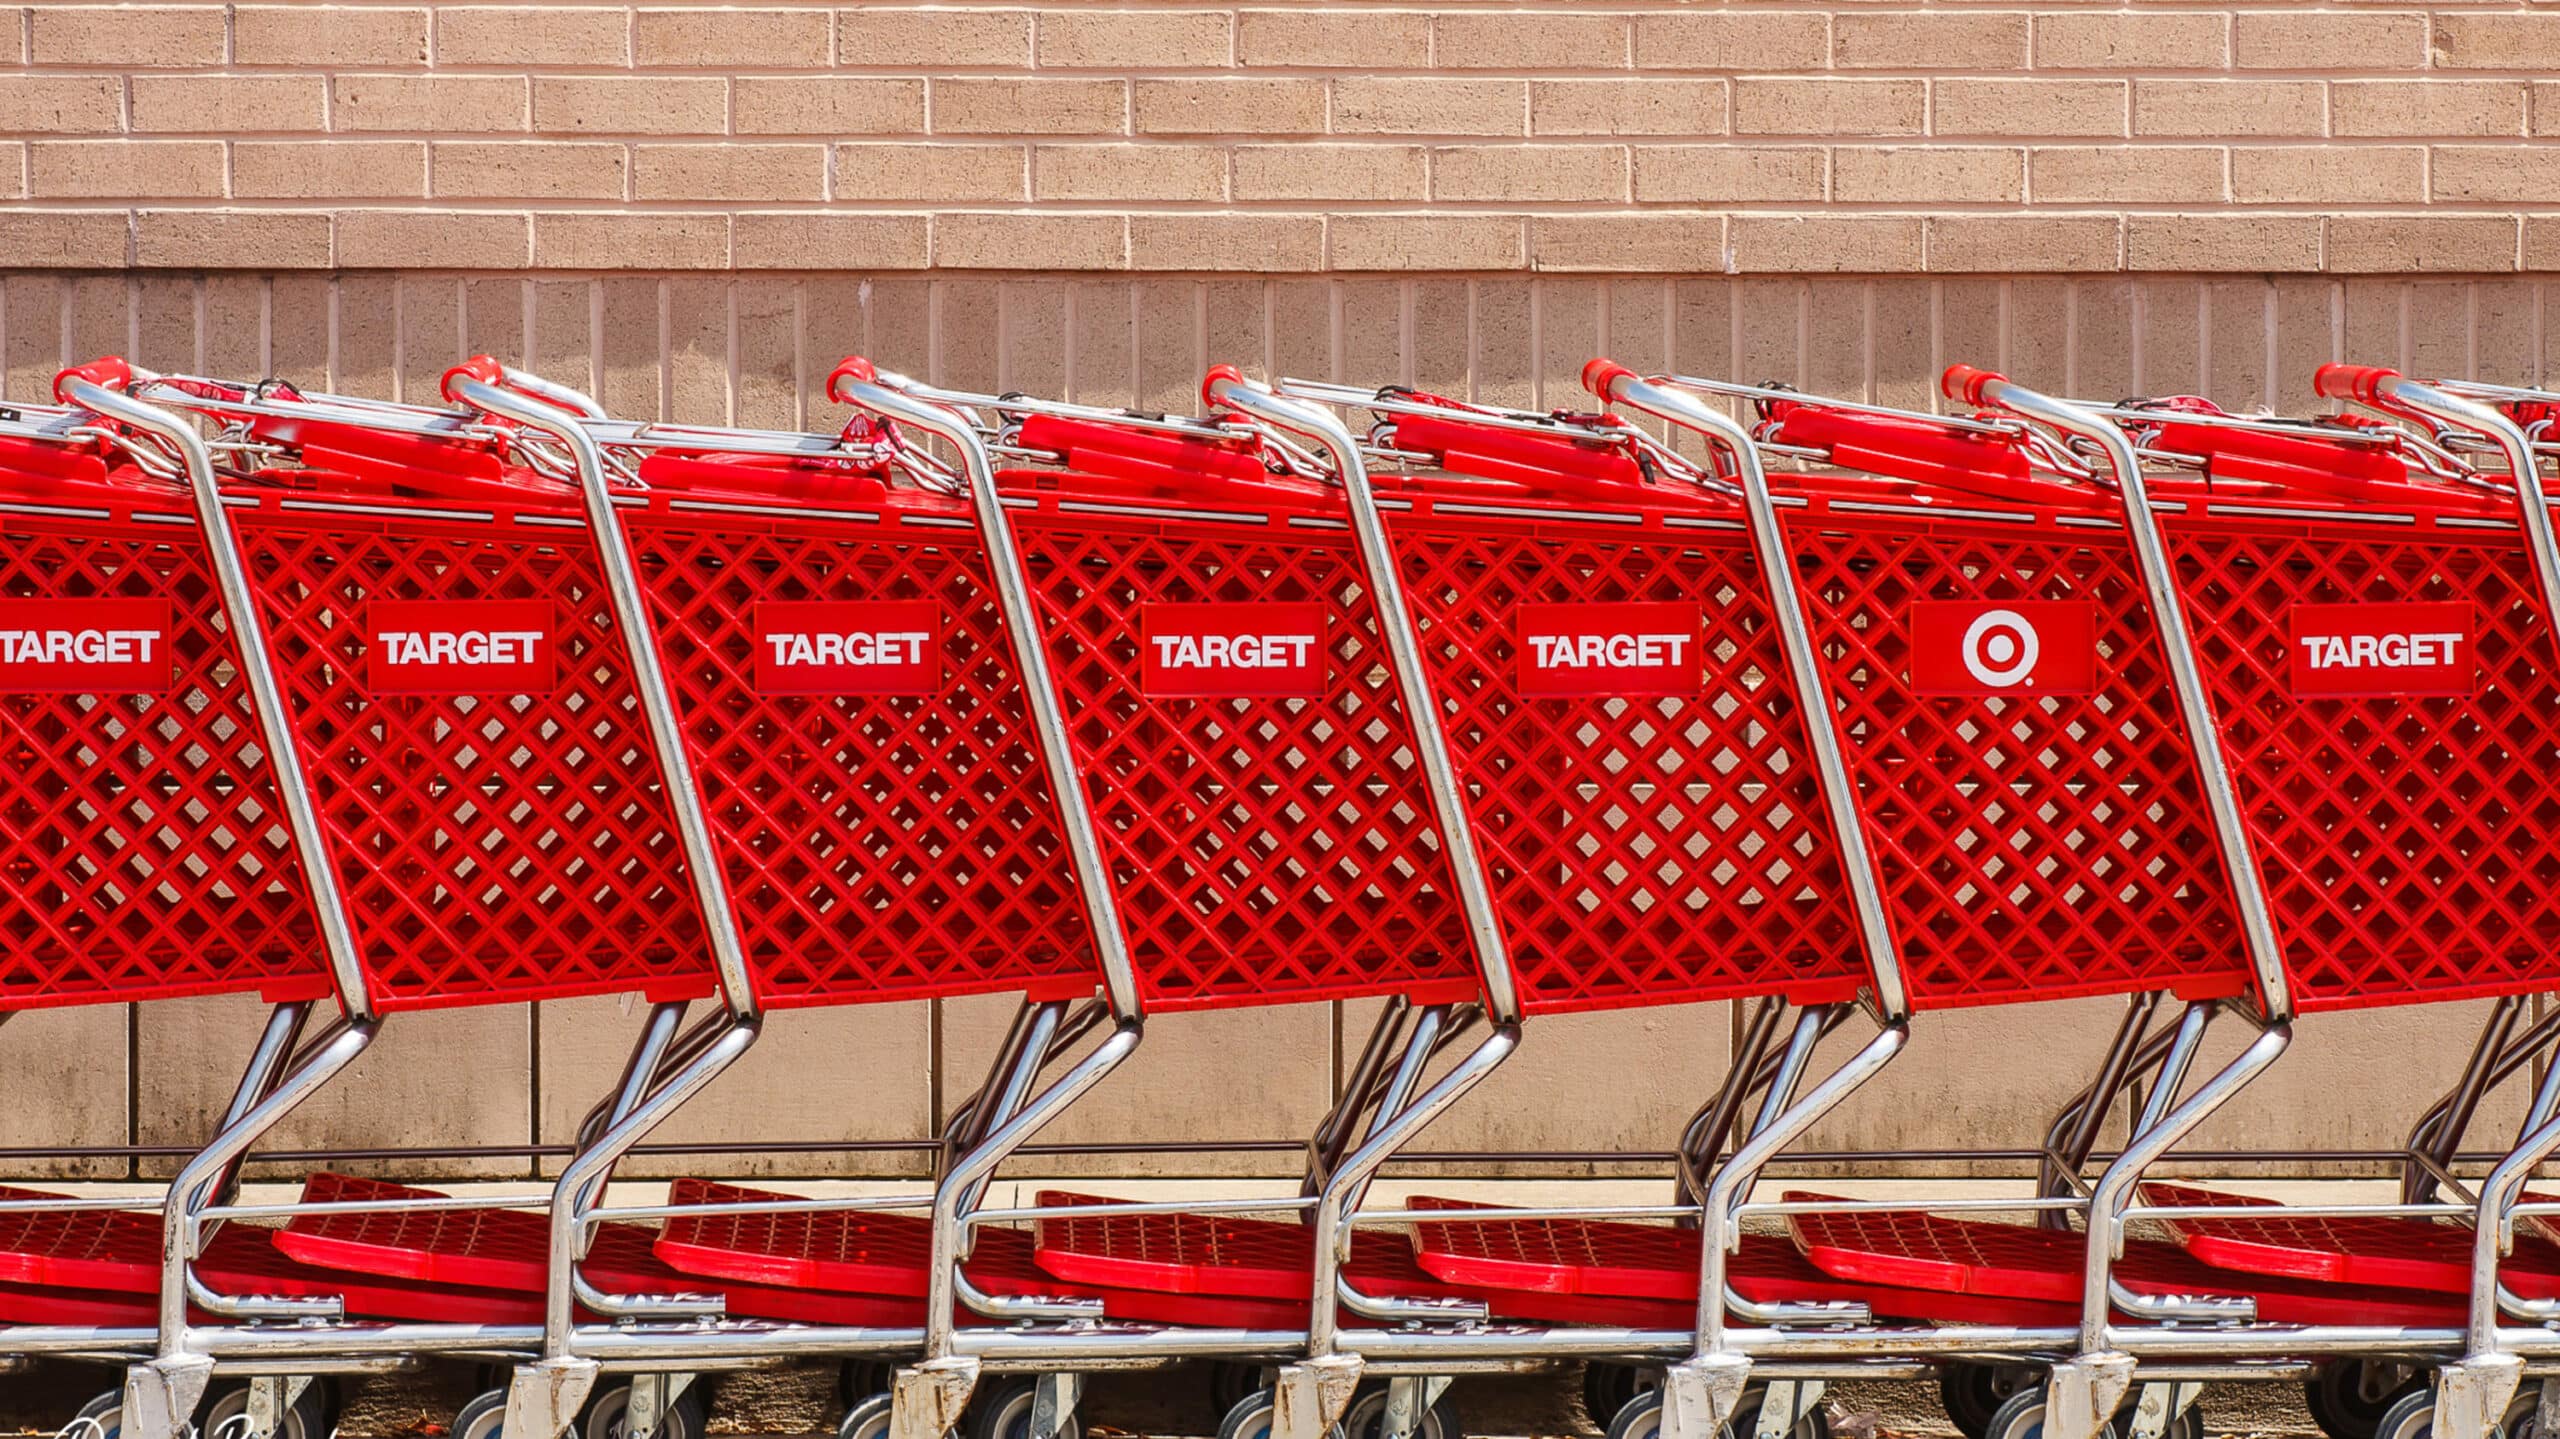 a row of carts at Target against a brick wall